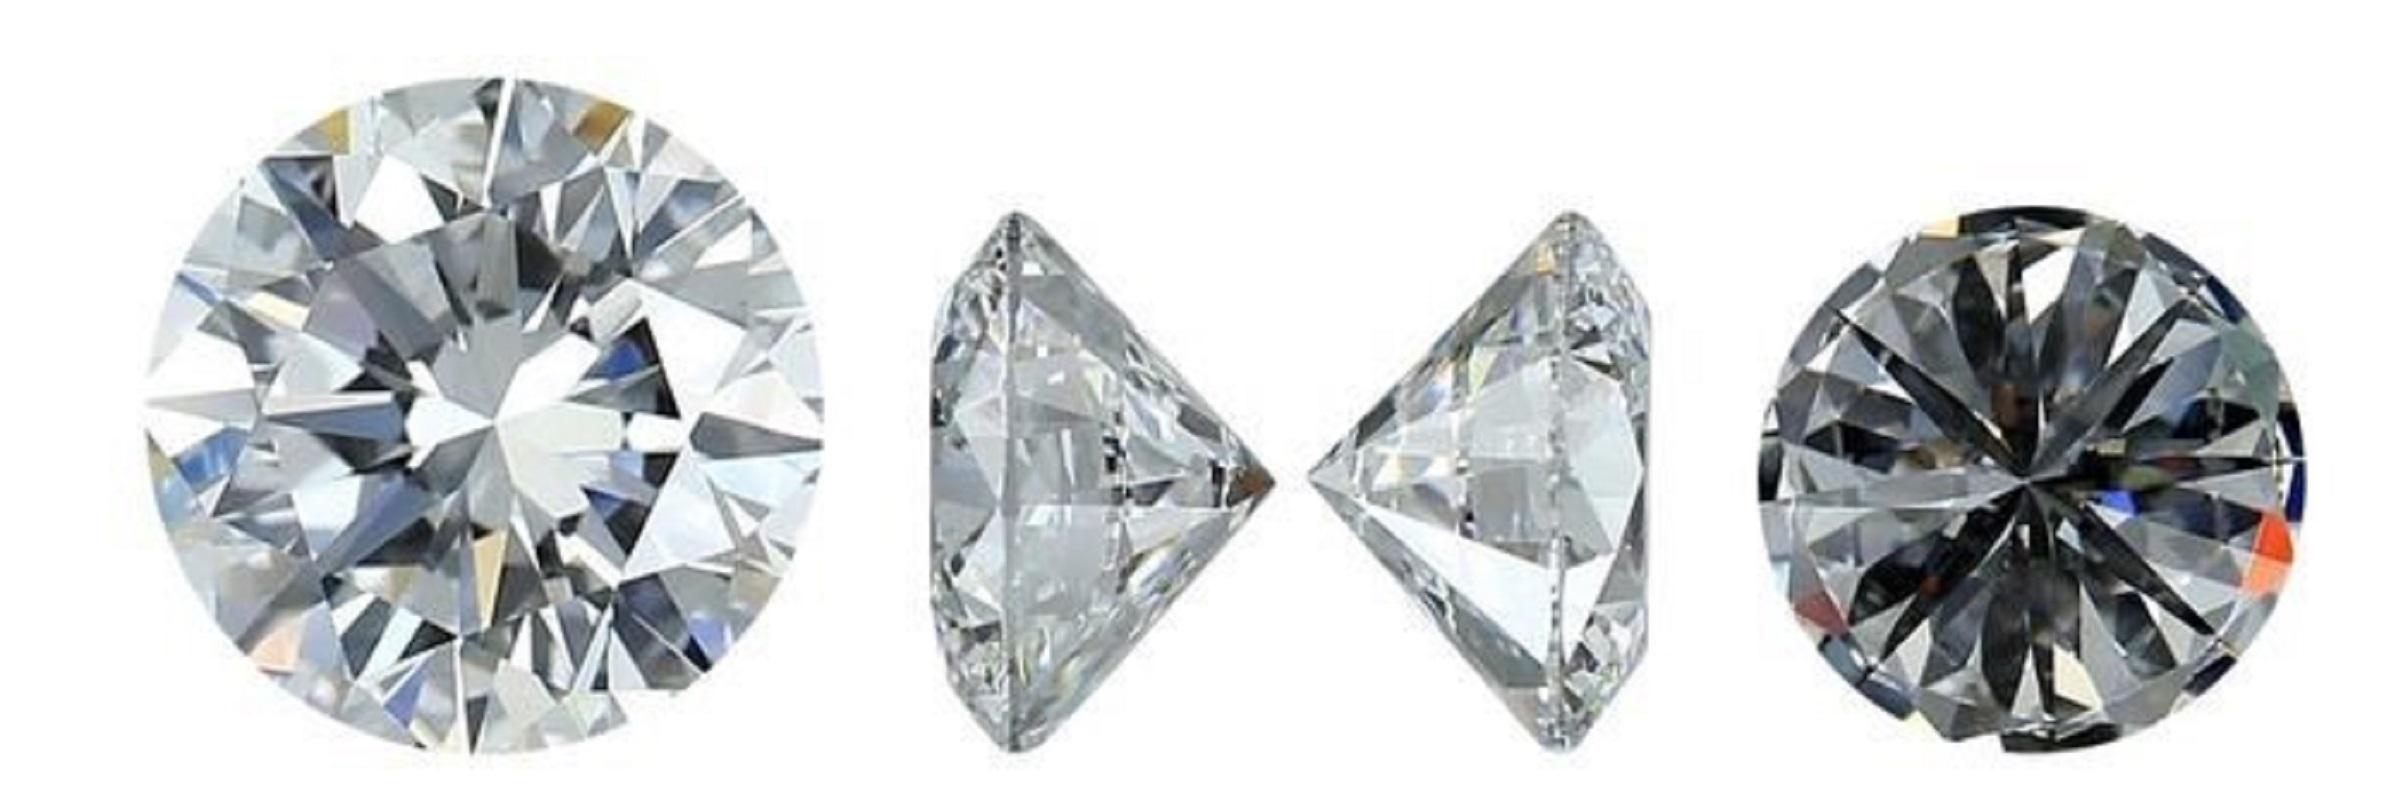 1 pièce Diamant - 1.07 ct - Rond - H - VS2 GIA
Diamant naturel rond de 1,07 carat H VS2 taille idéale avec certificat GIA et numéro d'inscription au laser.

Rapport GIA no. 2244996786

Sku : DSPV-264